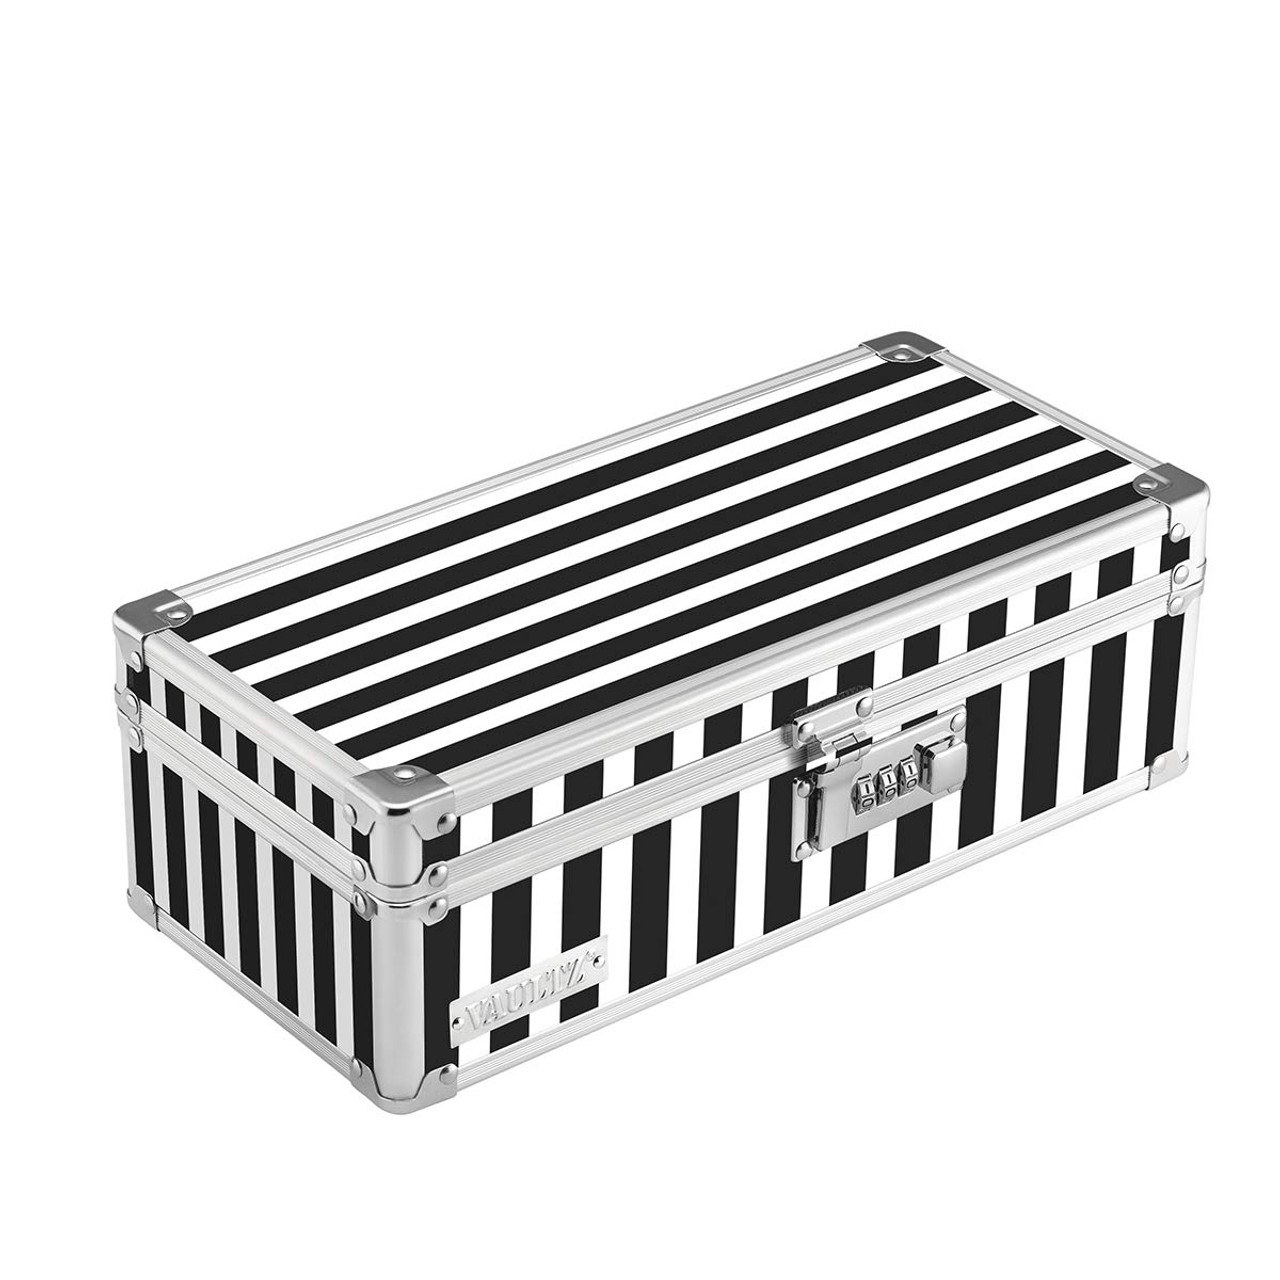 Vaultz Locking Medicine Storage Box with Combination Lock, Black & White  Stripe VZ00345